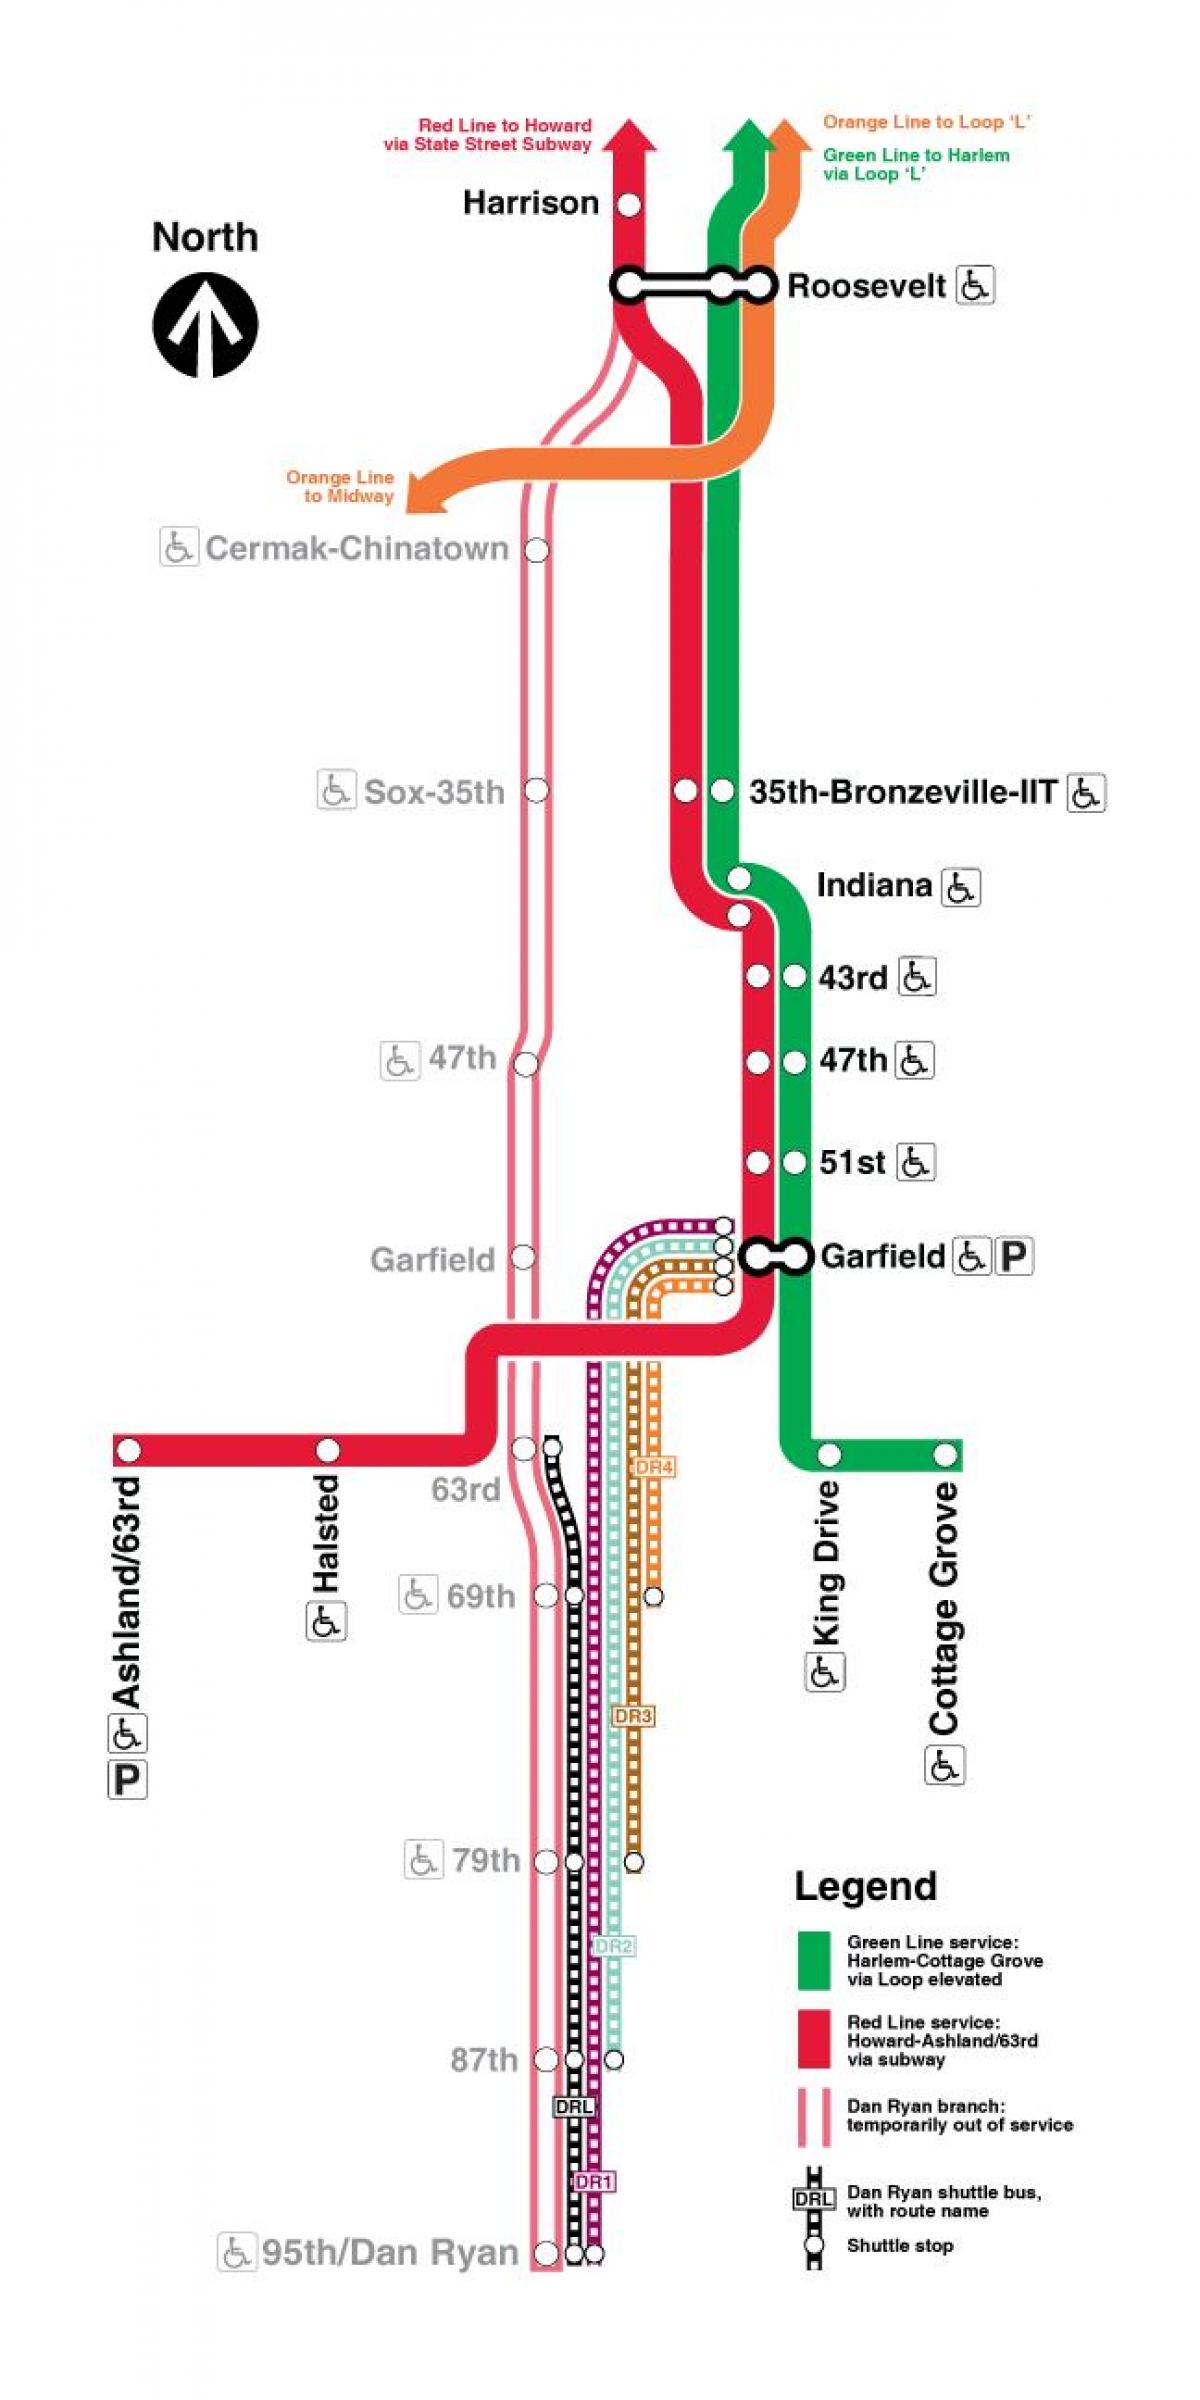 Chicago vonat térképen piros vonal